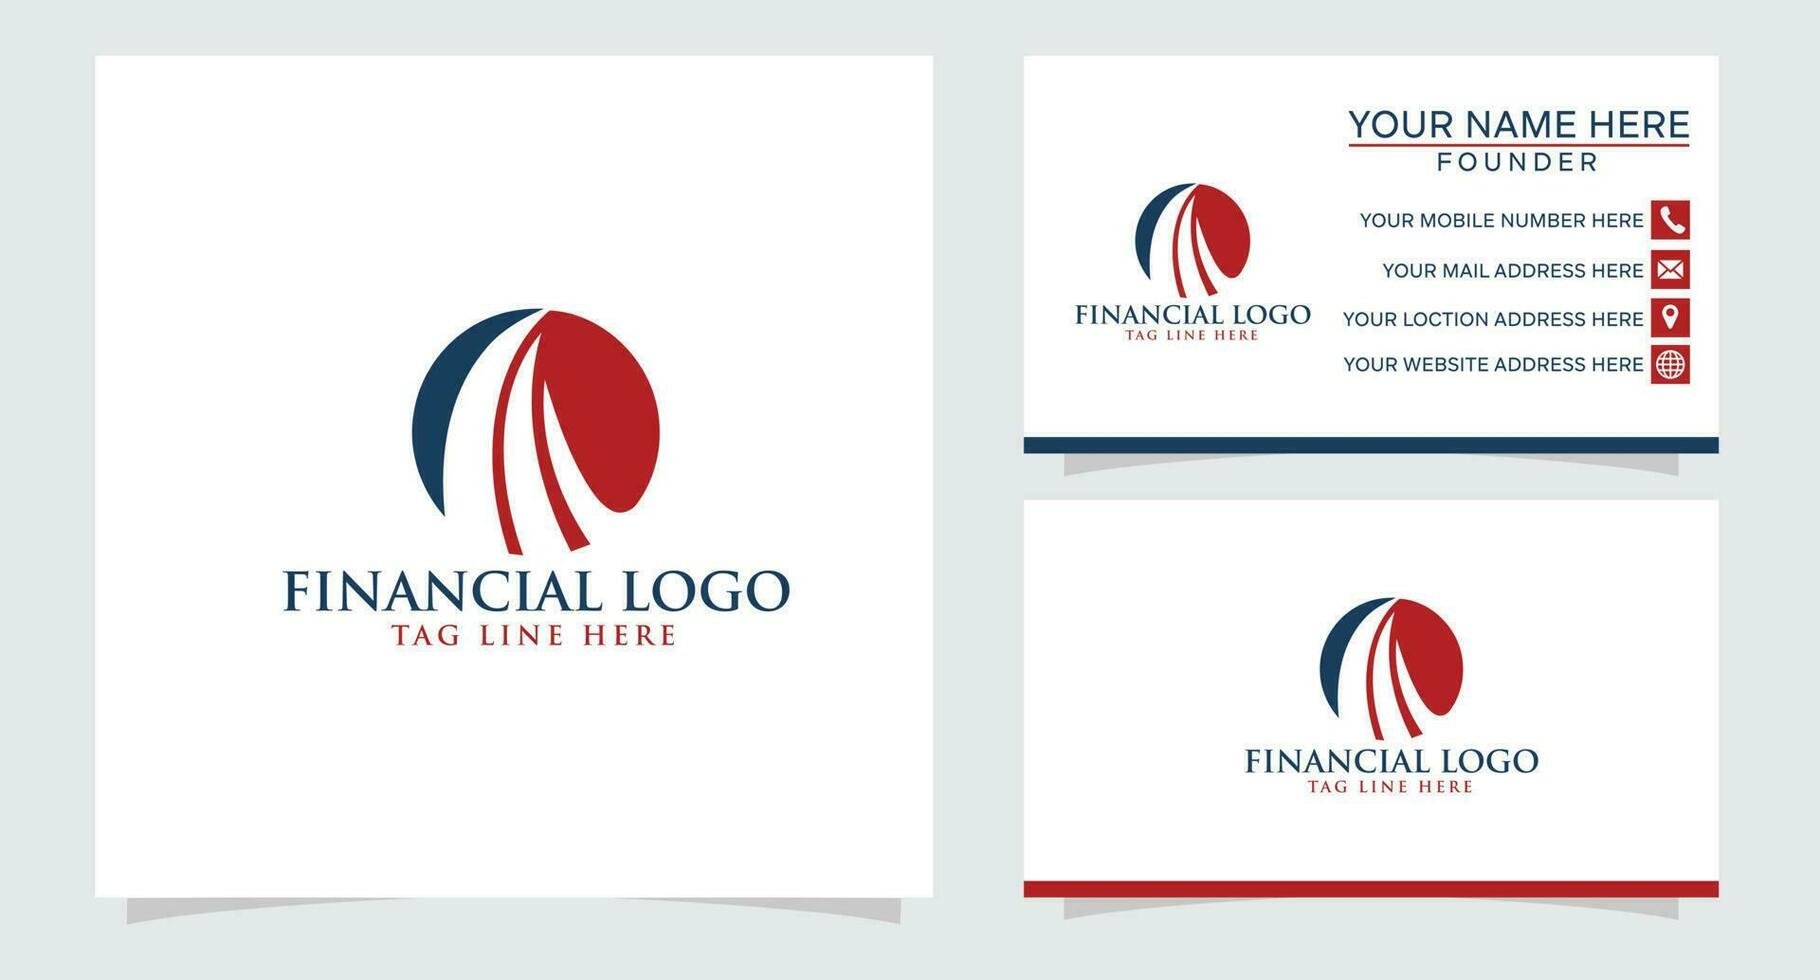 logo aziendale di marketing e finanziario vettore